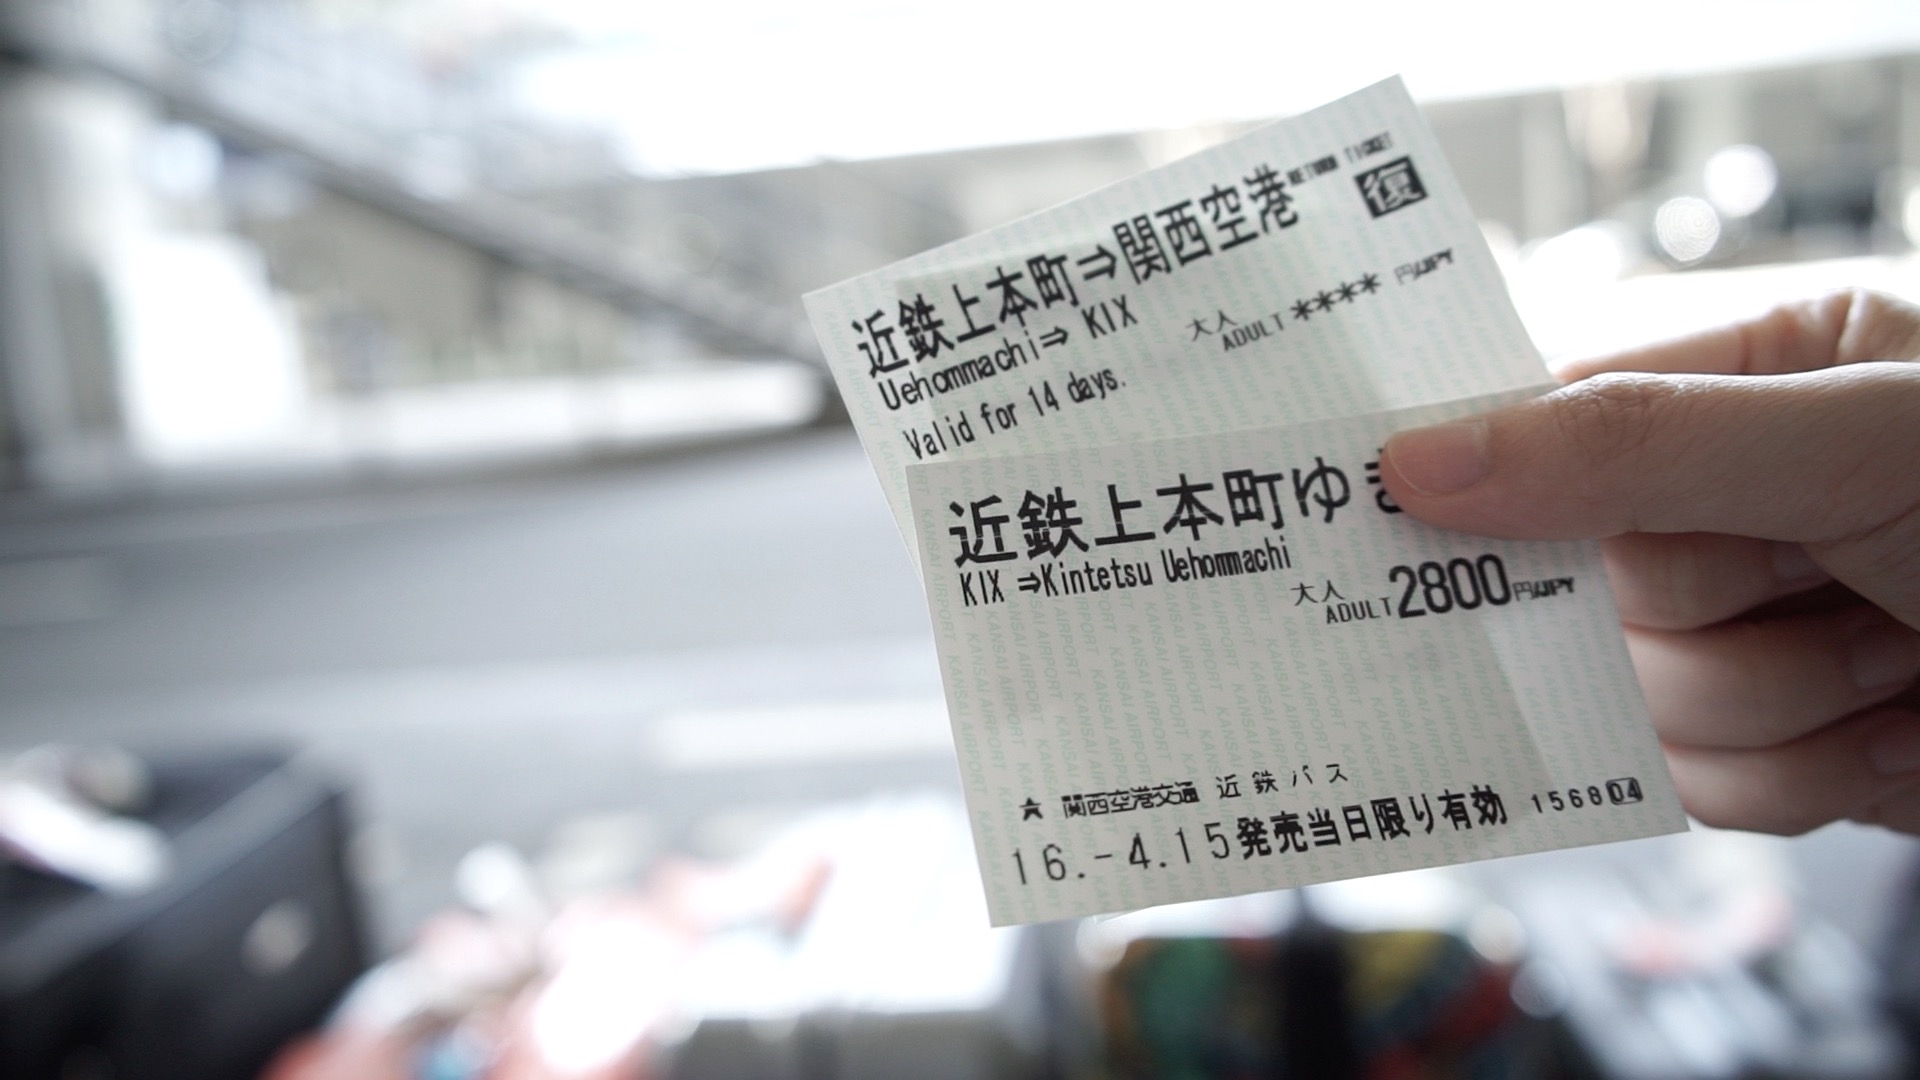 【貝遊日本】大阪廉價住宿推介「上本町四葉旅館」→ 2百幾蚊一間雙人房